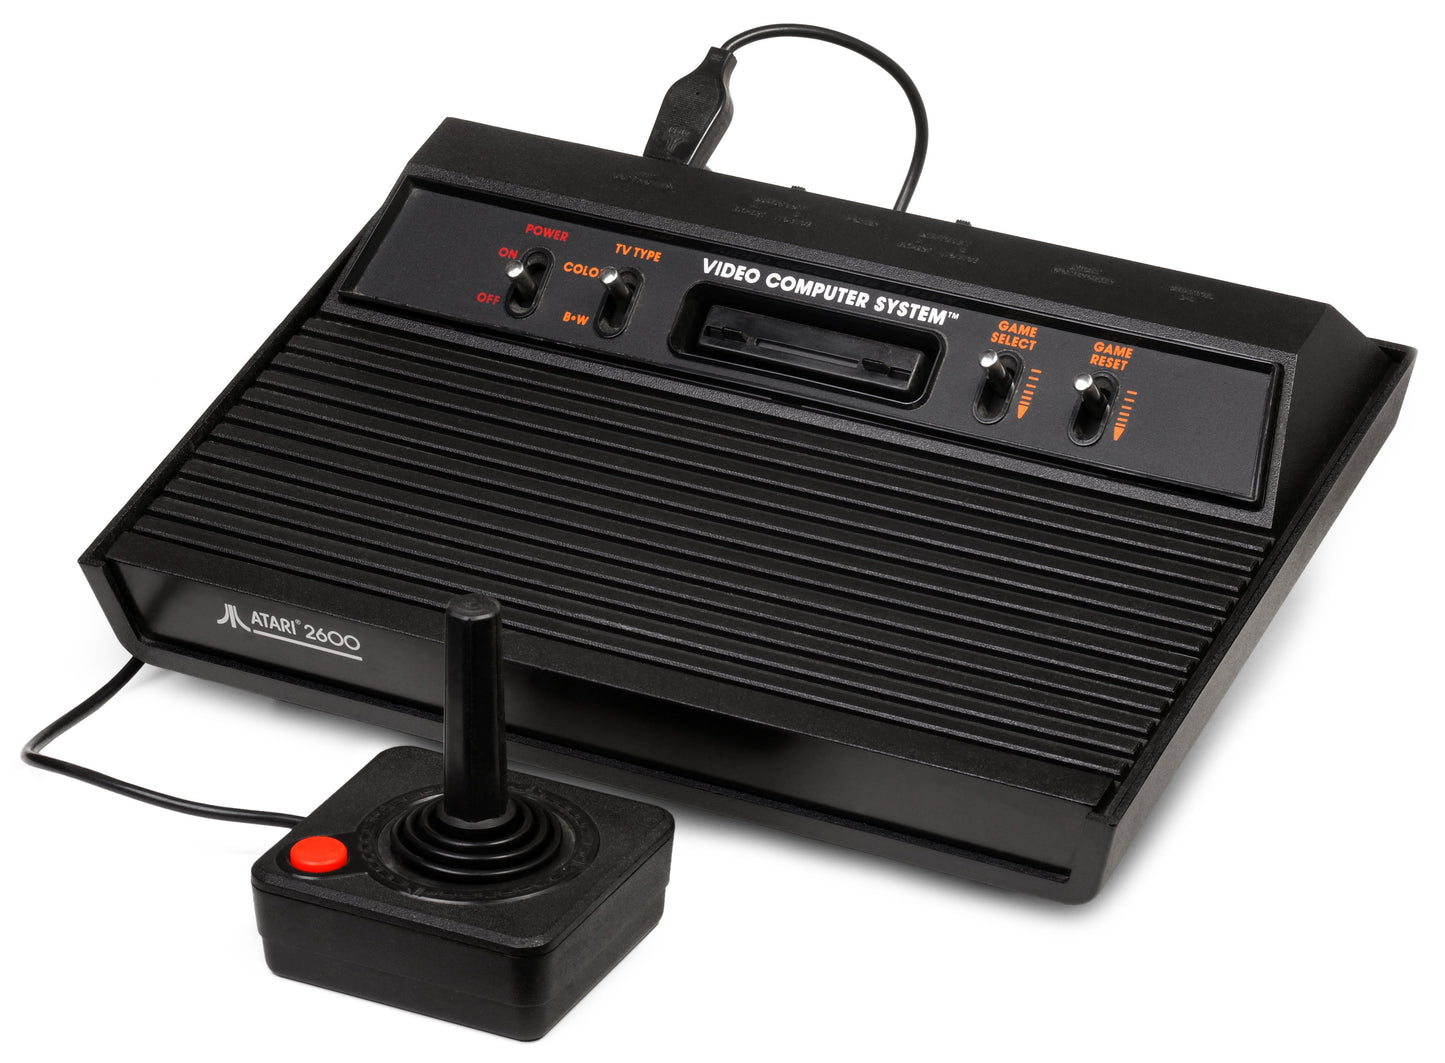 J2Games.com | Atari 2600 System - Darth Vader Unit (Atari 2600 ) (Pre-Played - Game System).